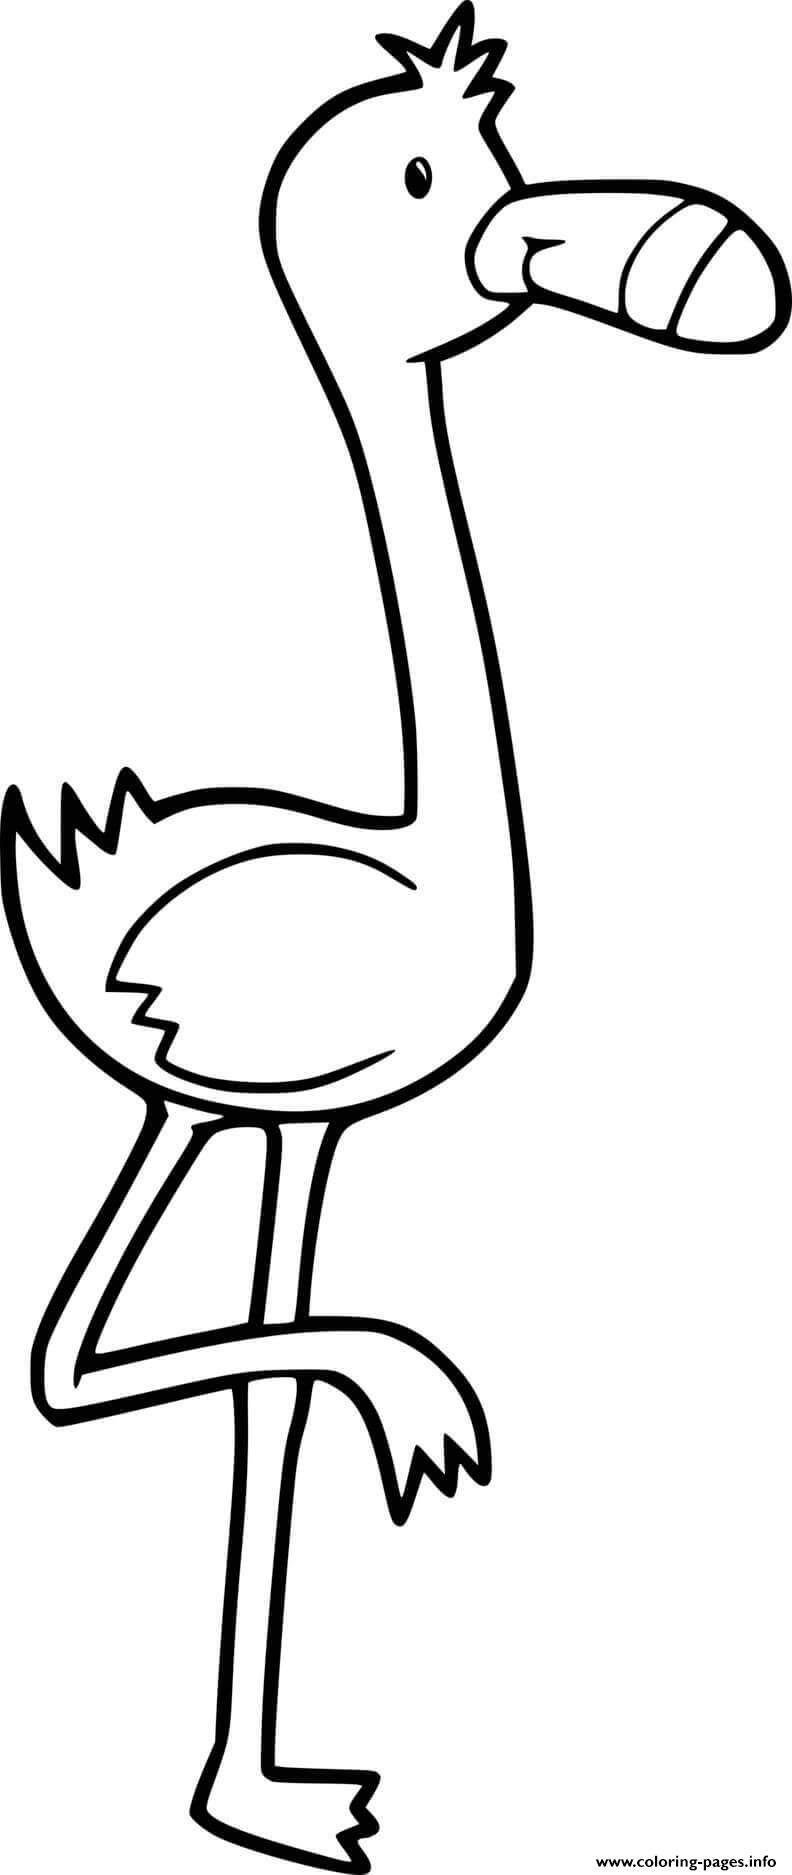 Easy Cartoon Flamingo coloring